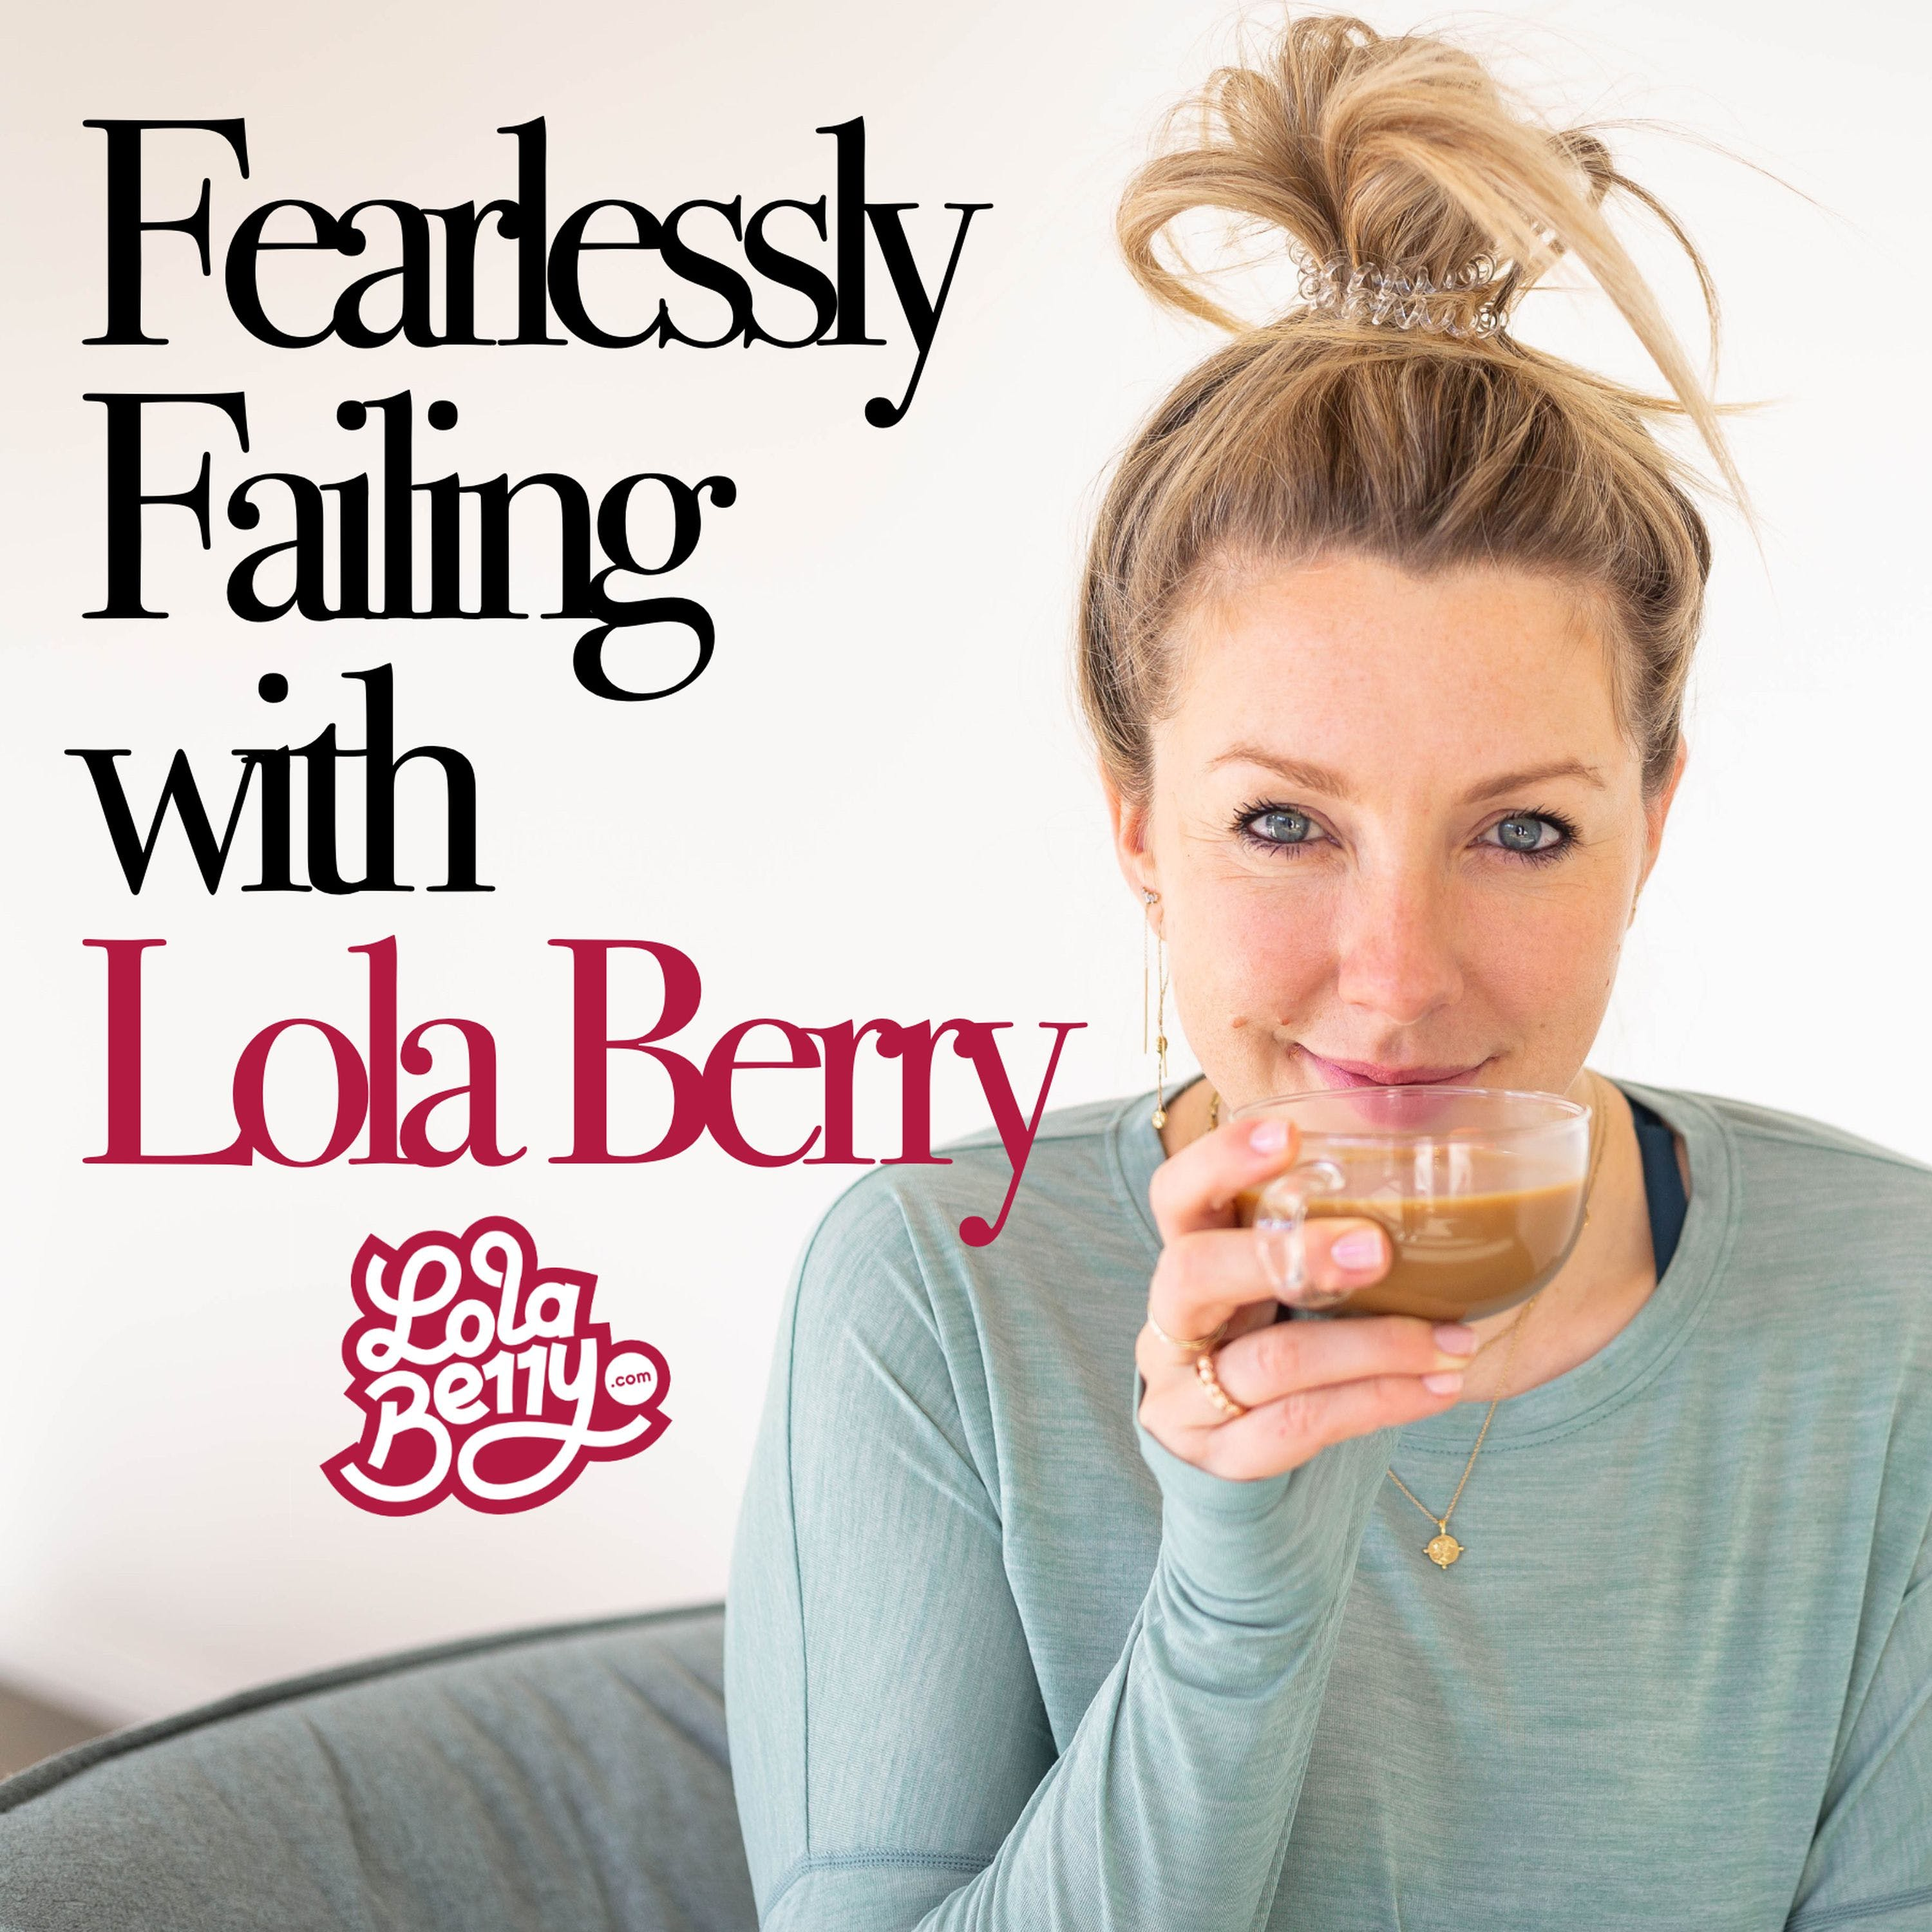 9. Fearlessly Failing: Leisel Jones